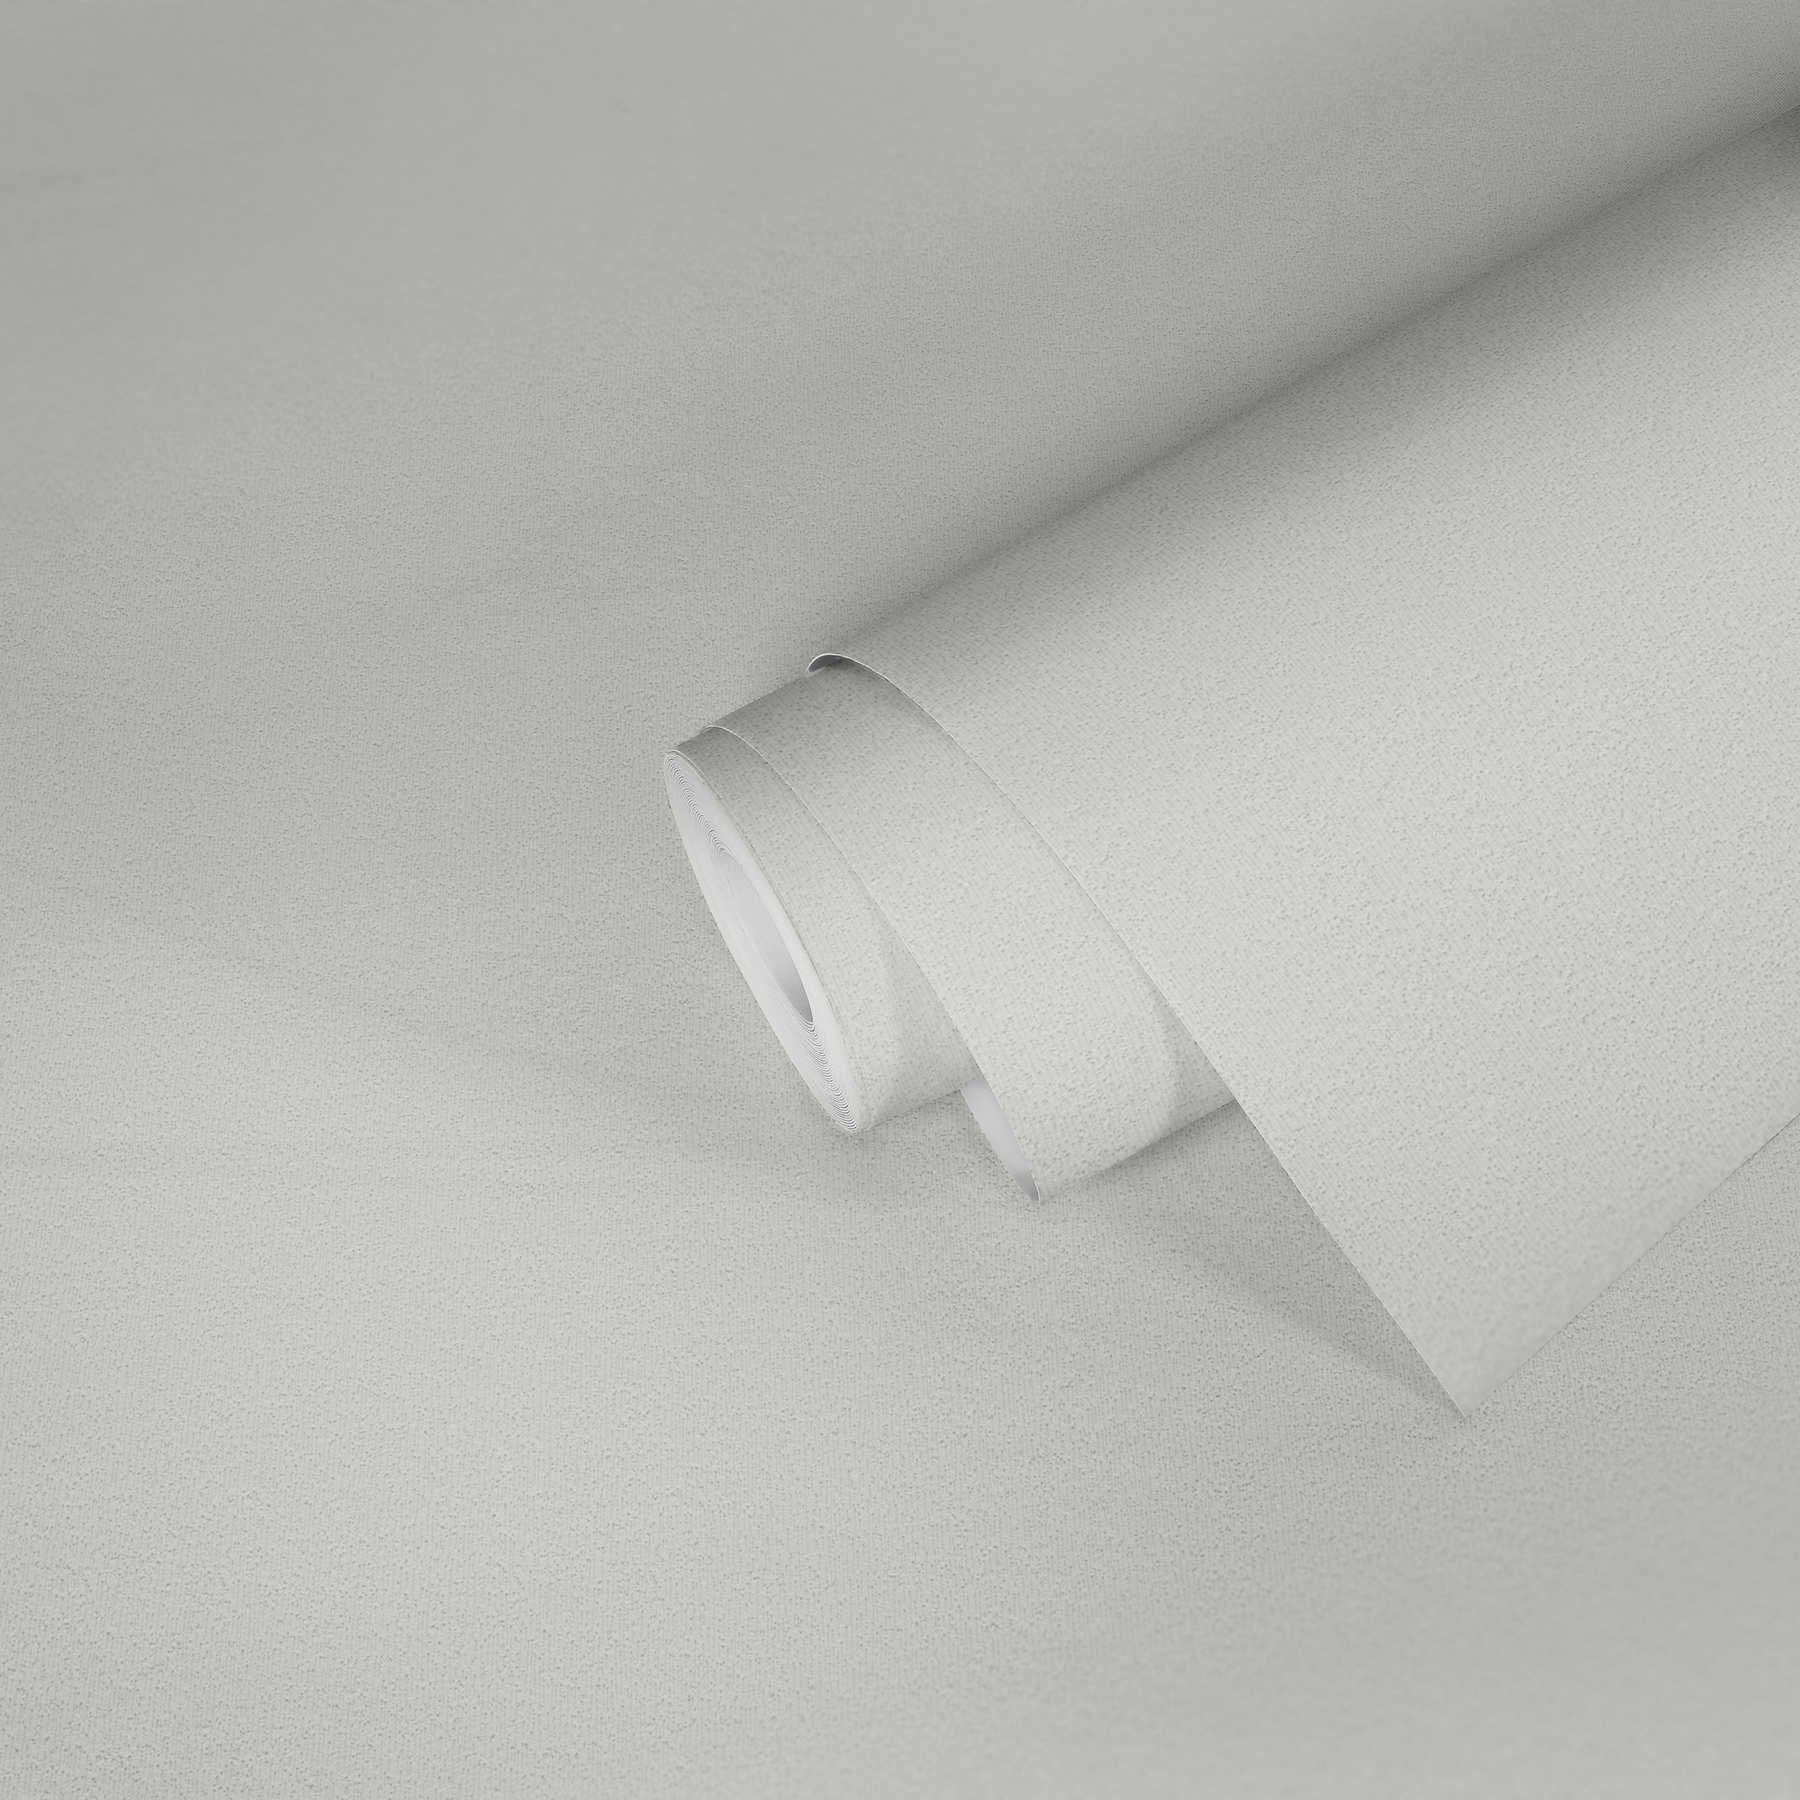             Papier peint structuré avec structure plane en crépi - Blanc
        